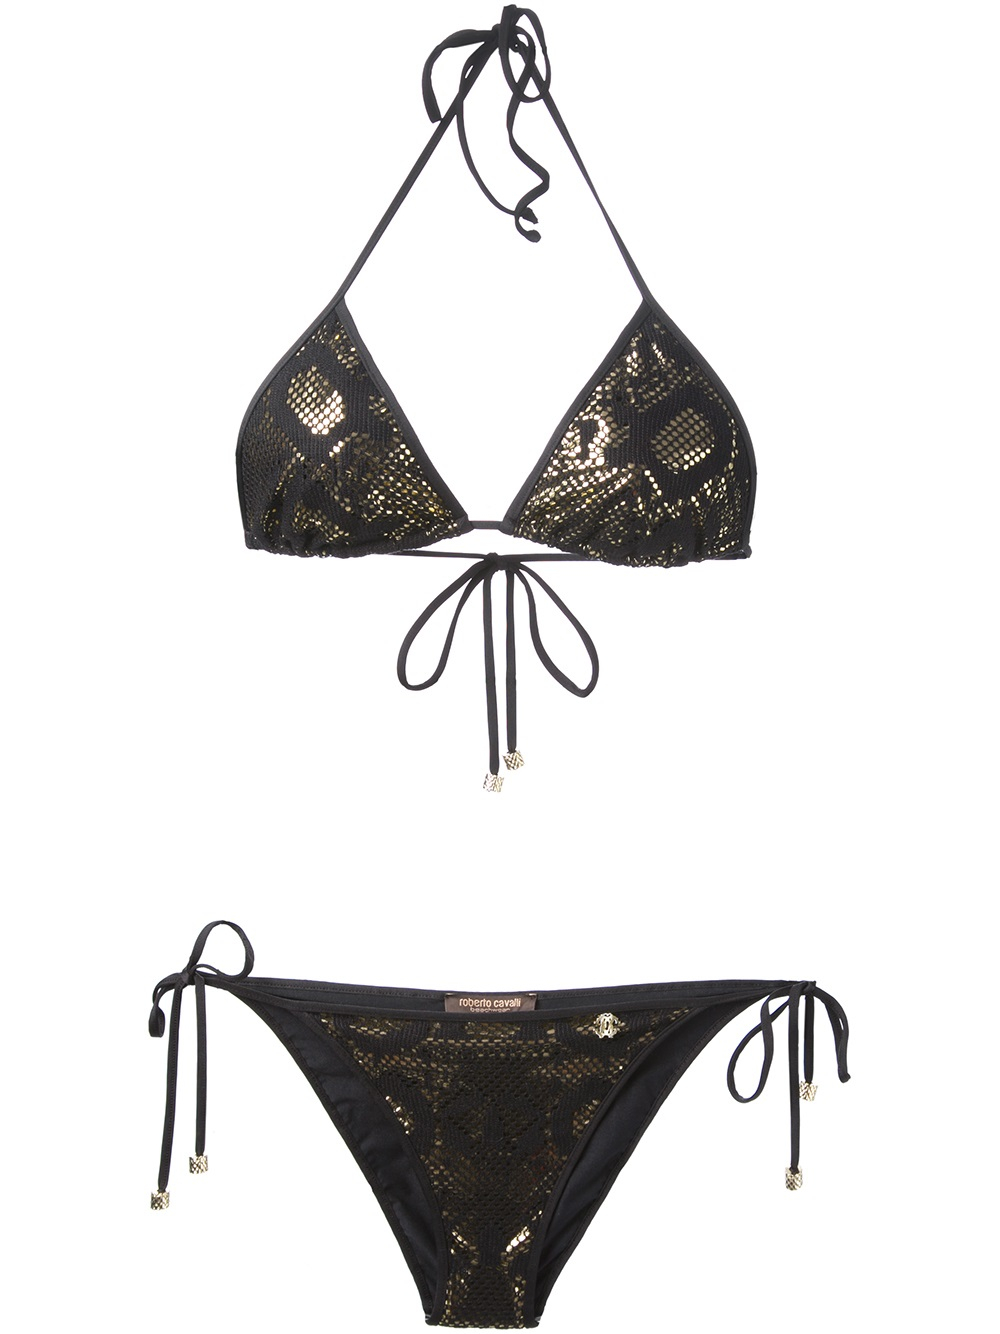 Roberto Cavalli Snakeskin Print Bikini in Black - Lyst